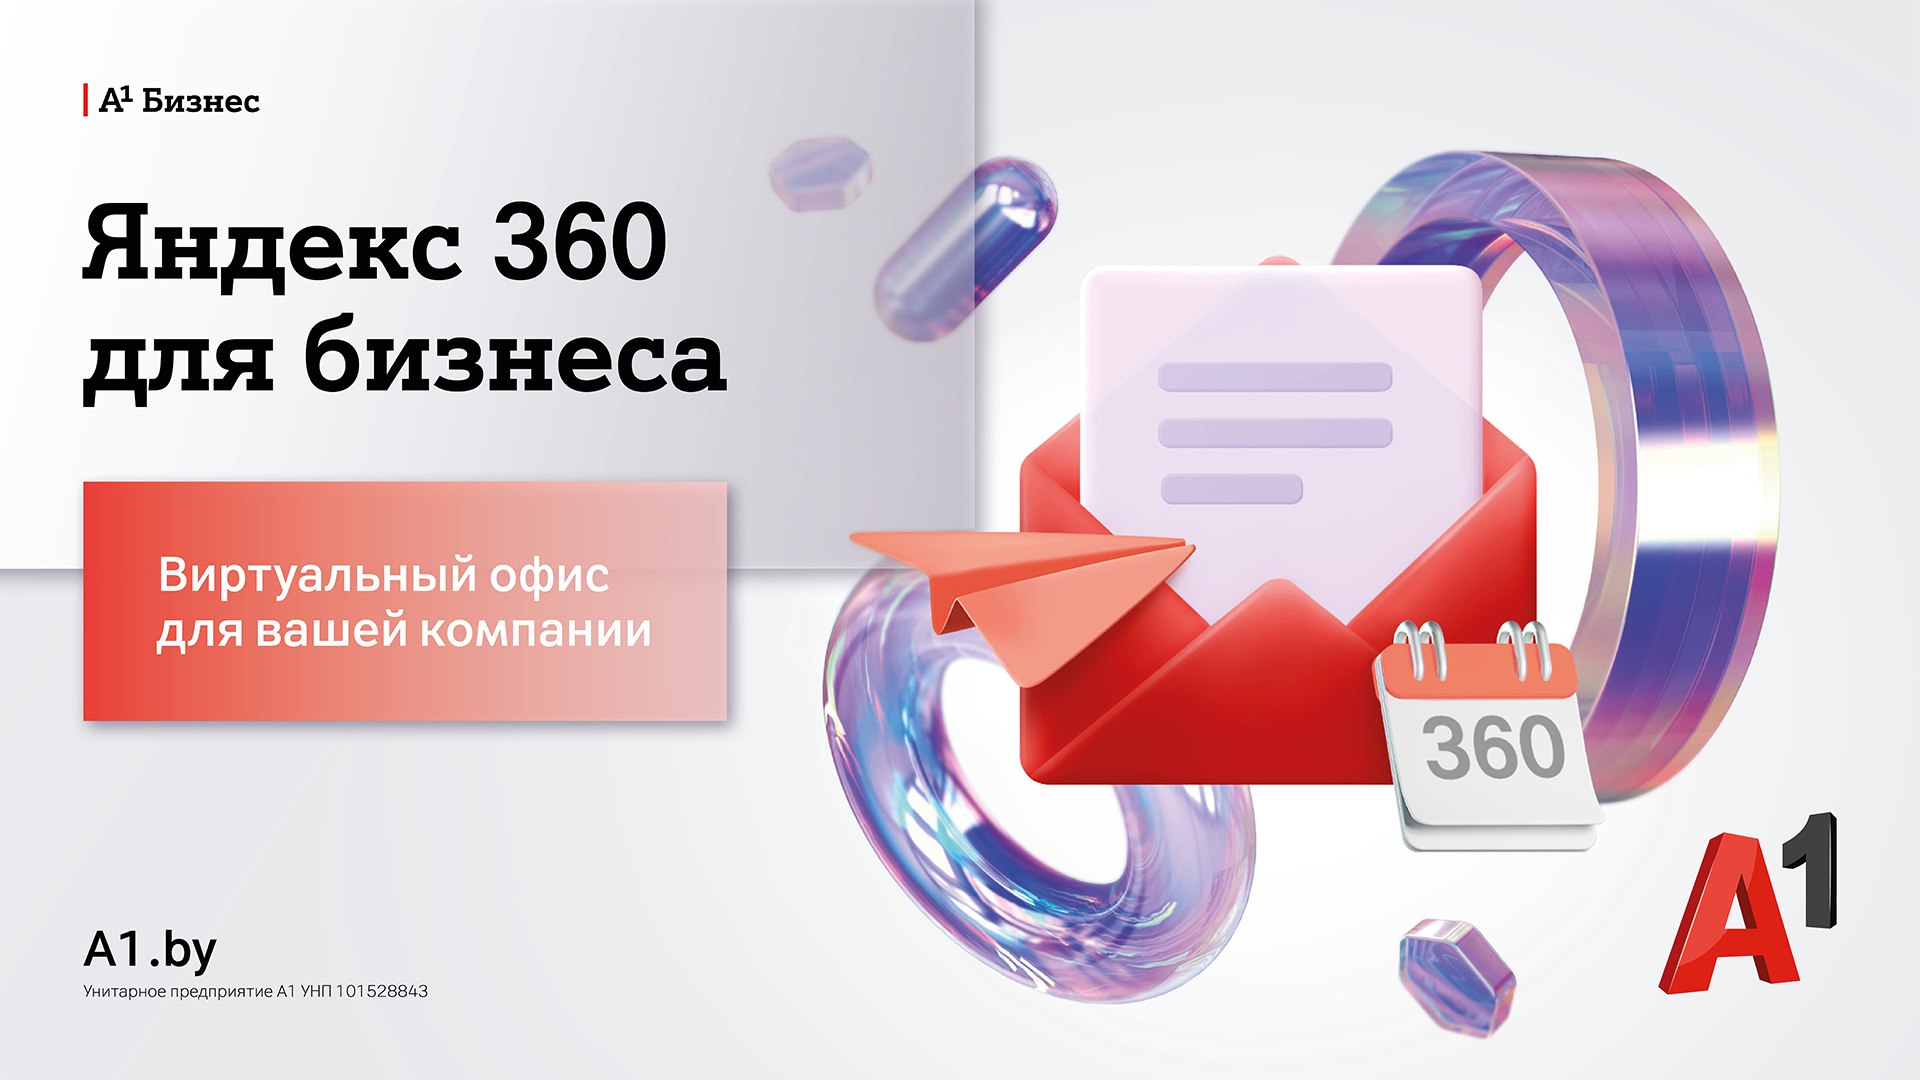 Виртуальный офис по подписке: А1 предоставил доступ к услуге Яндекс 360 для бизнеса